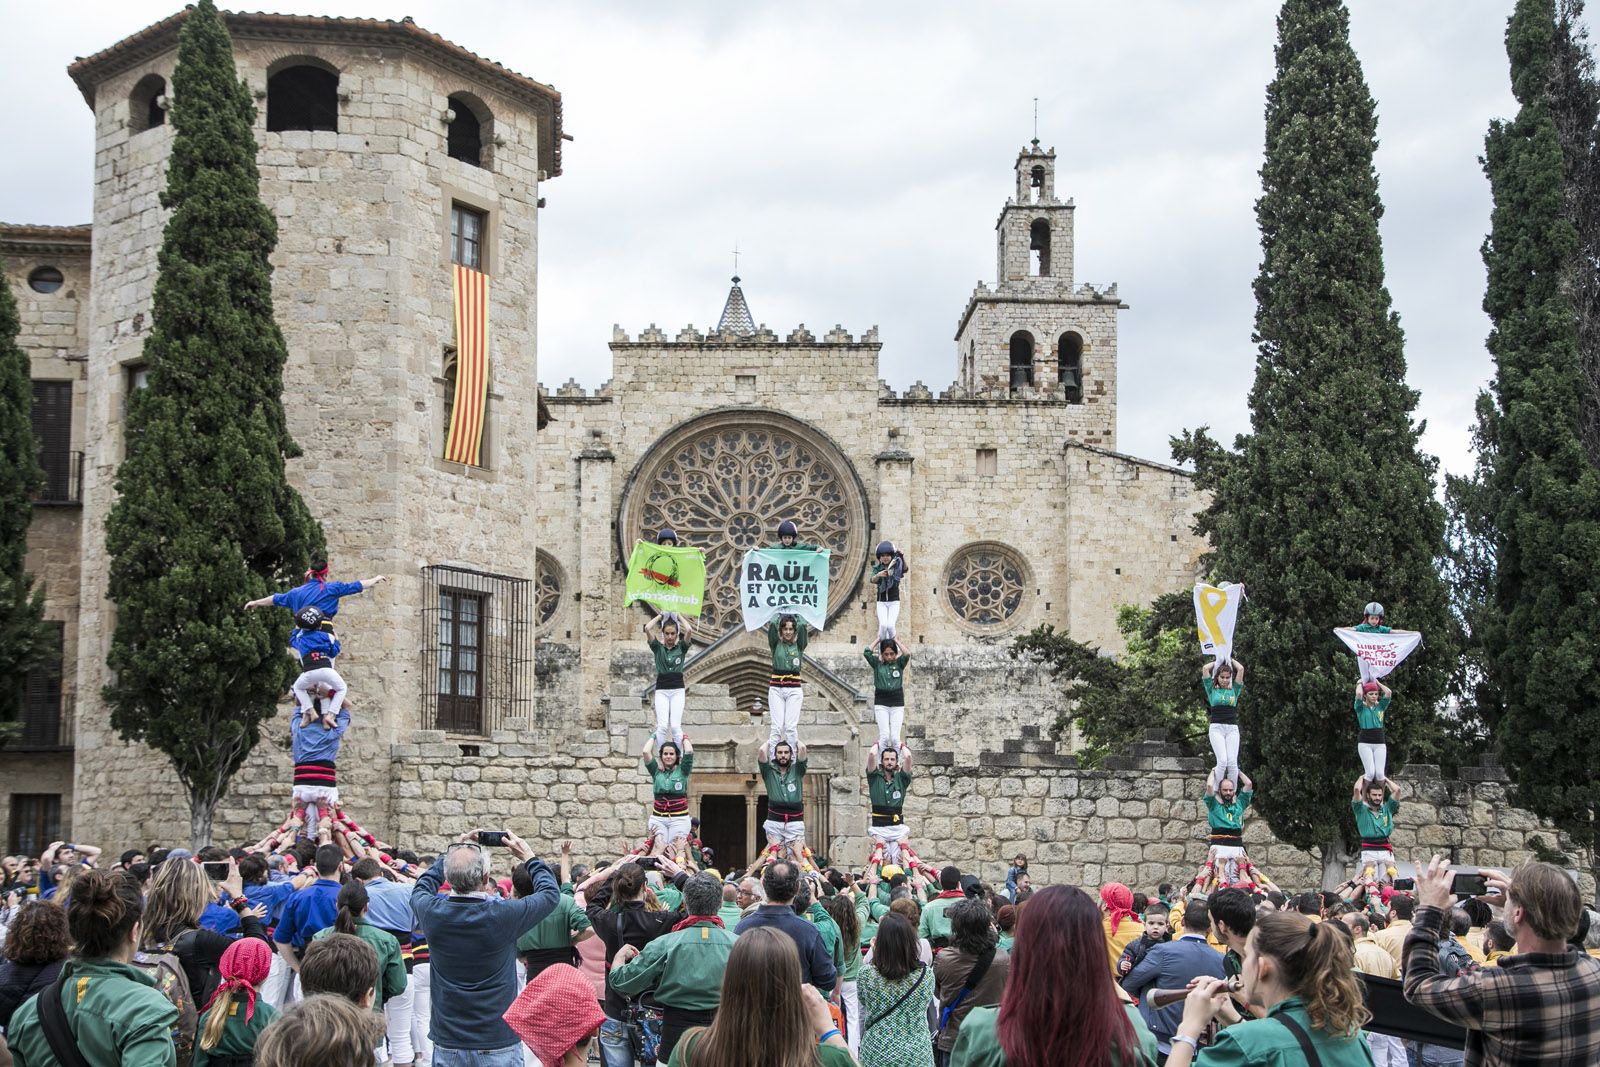 Els castellers reclamen la llibertat dels presos polítics. FOTO: Lali Puig